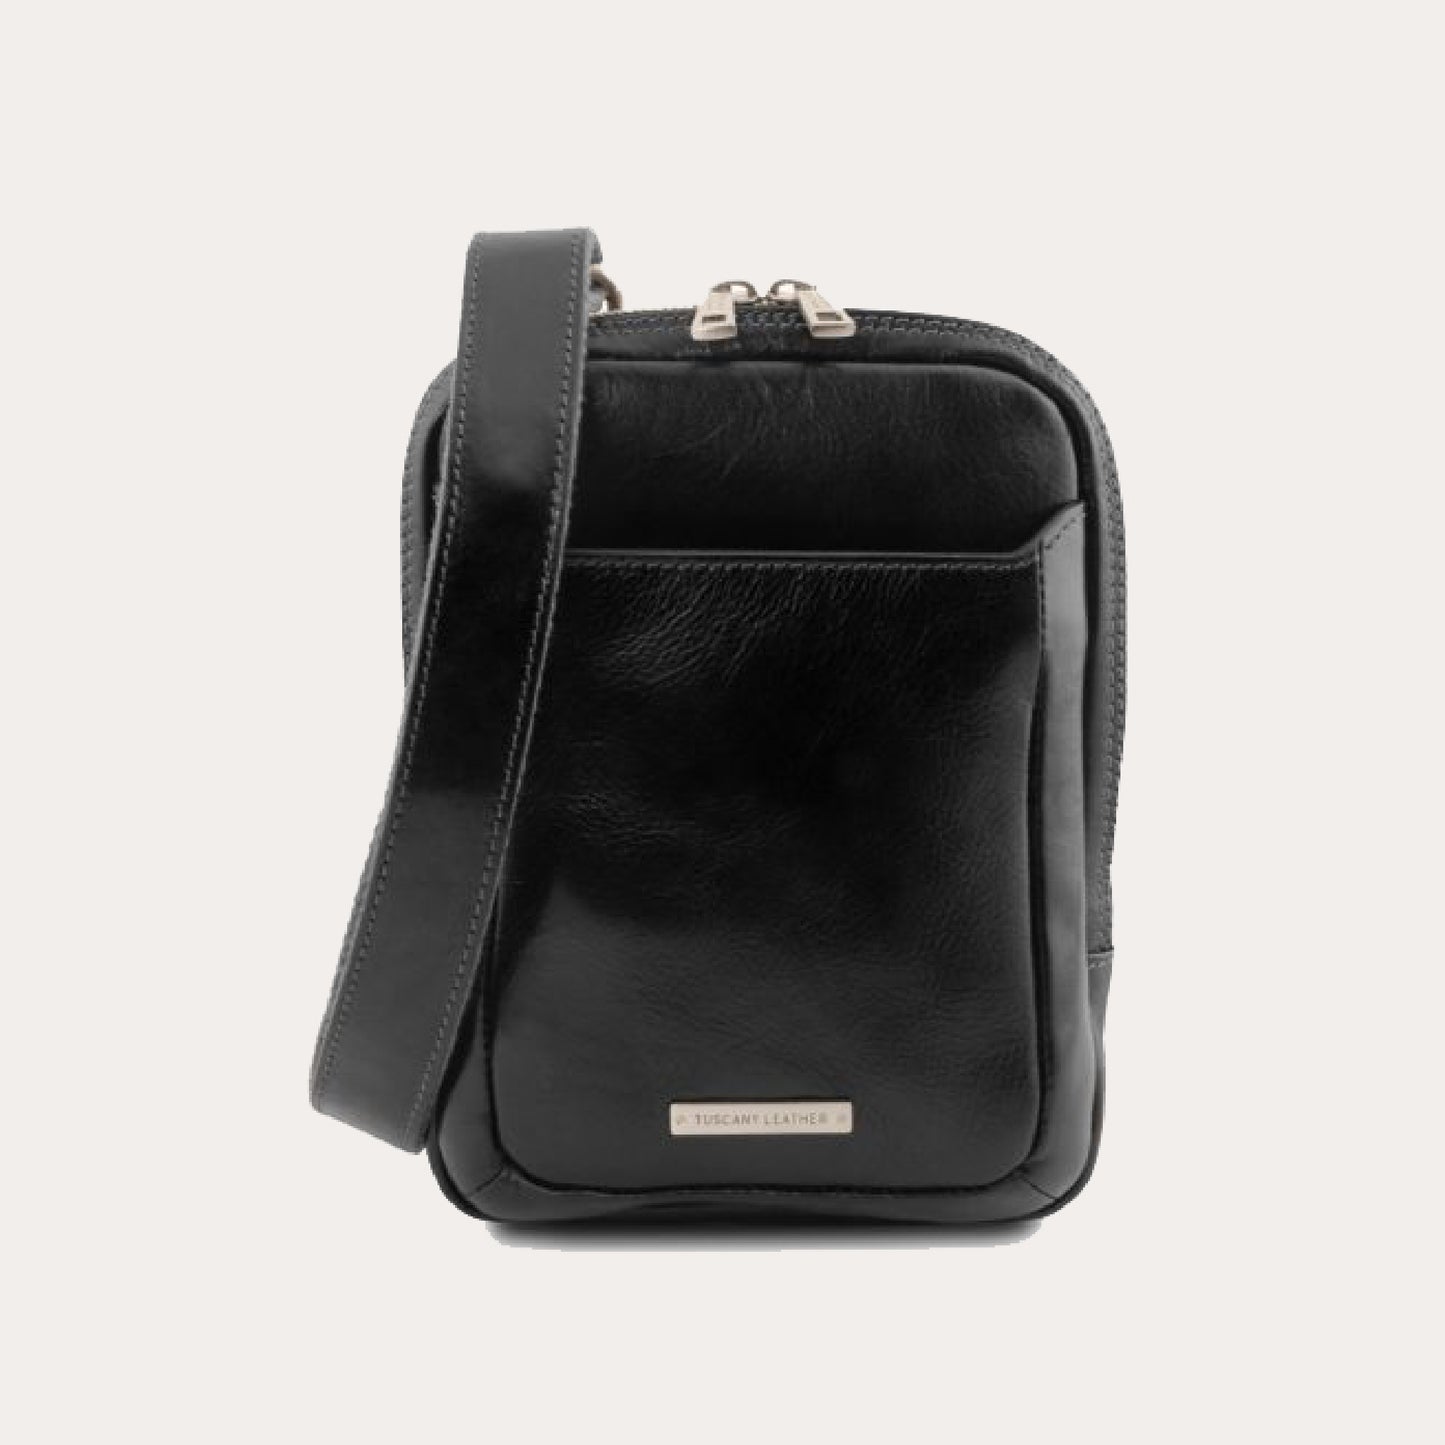 Tuscany Leather Black Leather Crossbody Bag